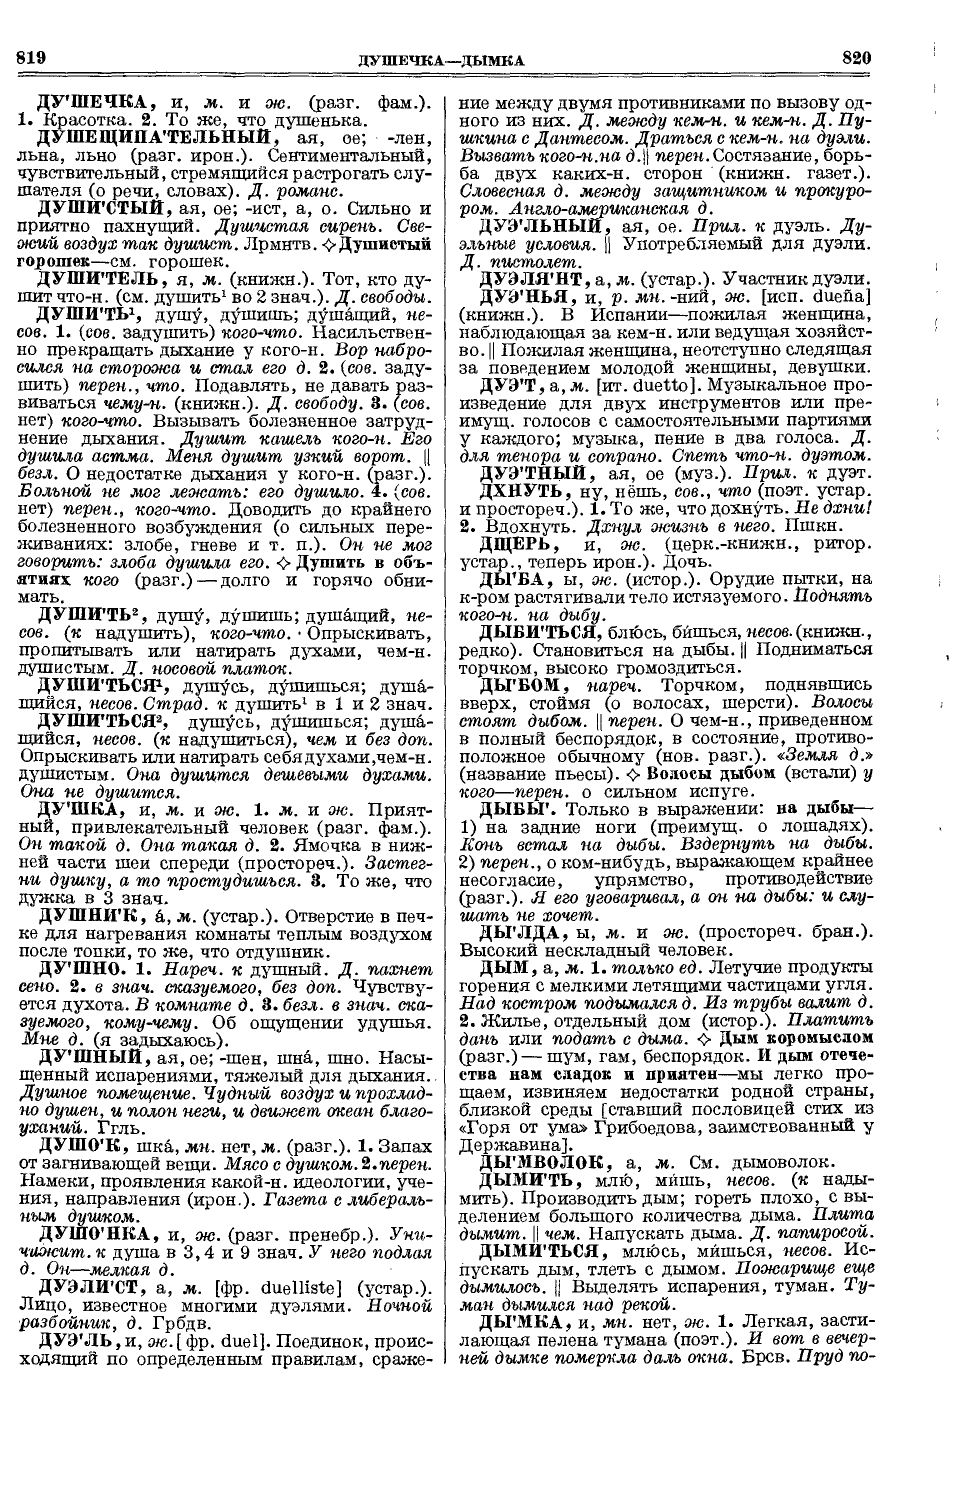 Фотокопия pdf / скан страницы 448 толкового словаря Ушакова (том 1)